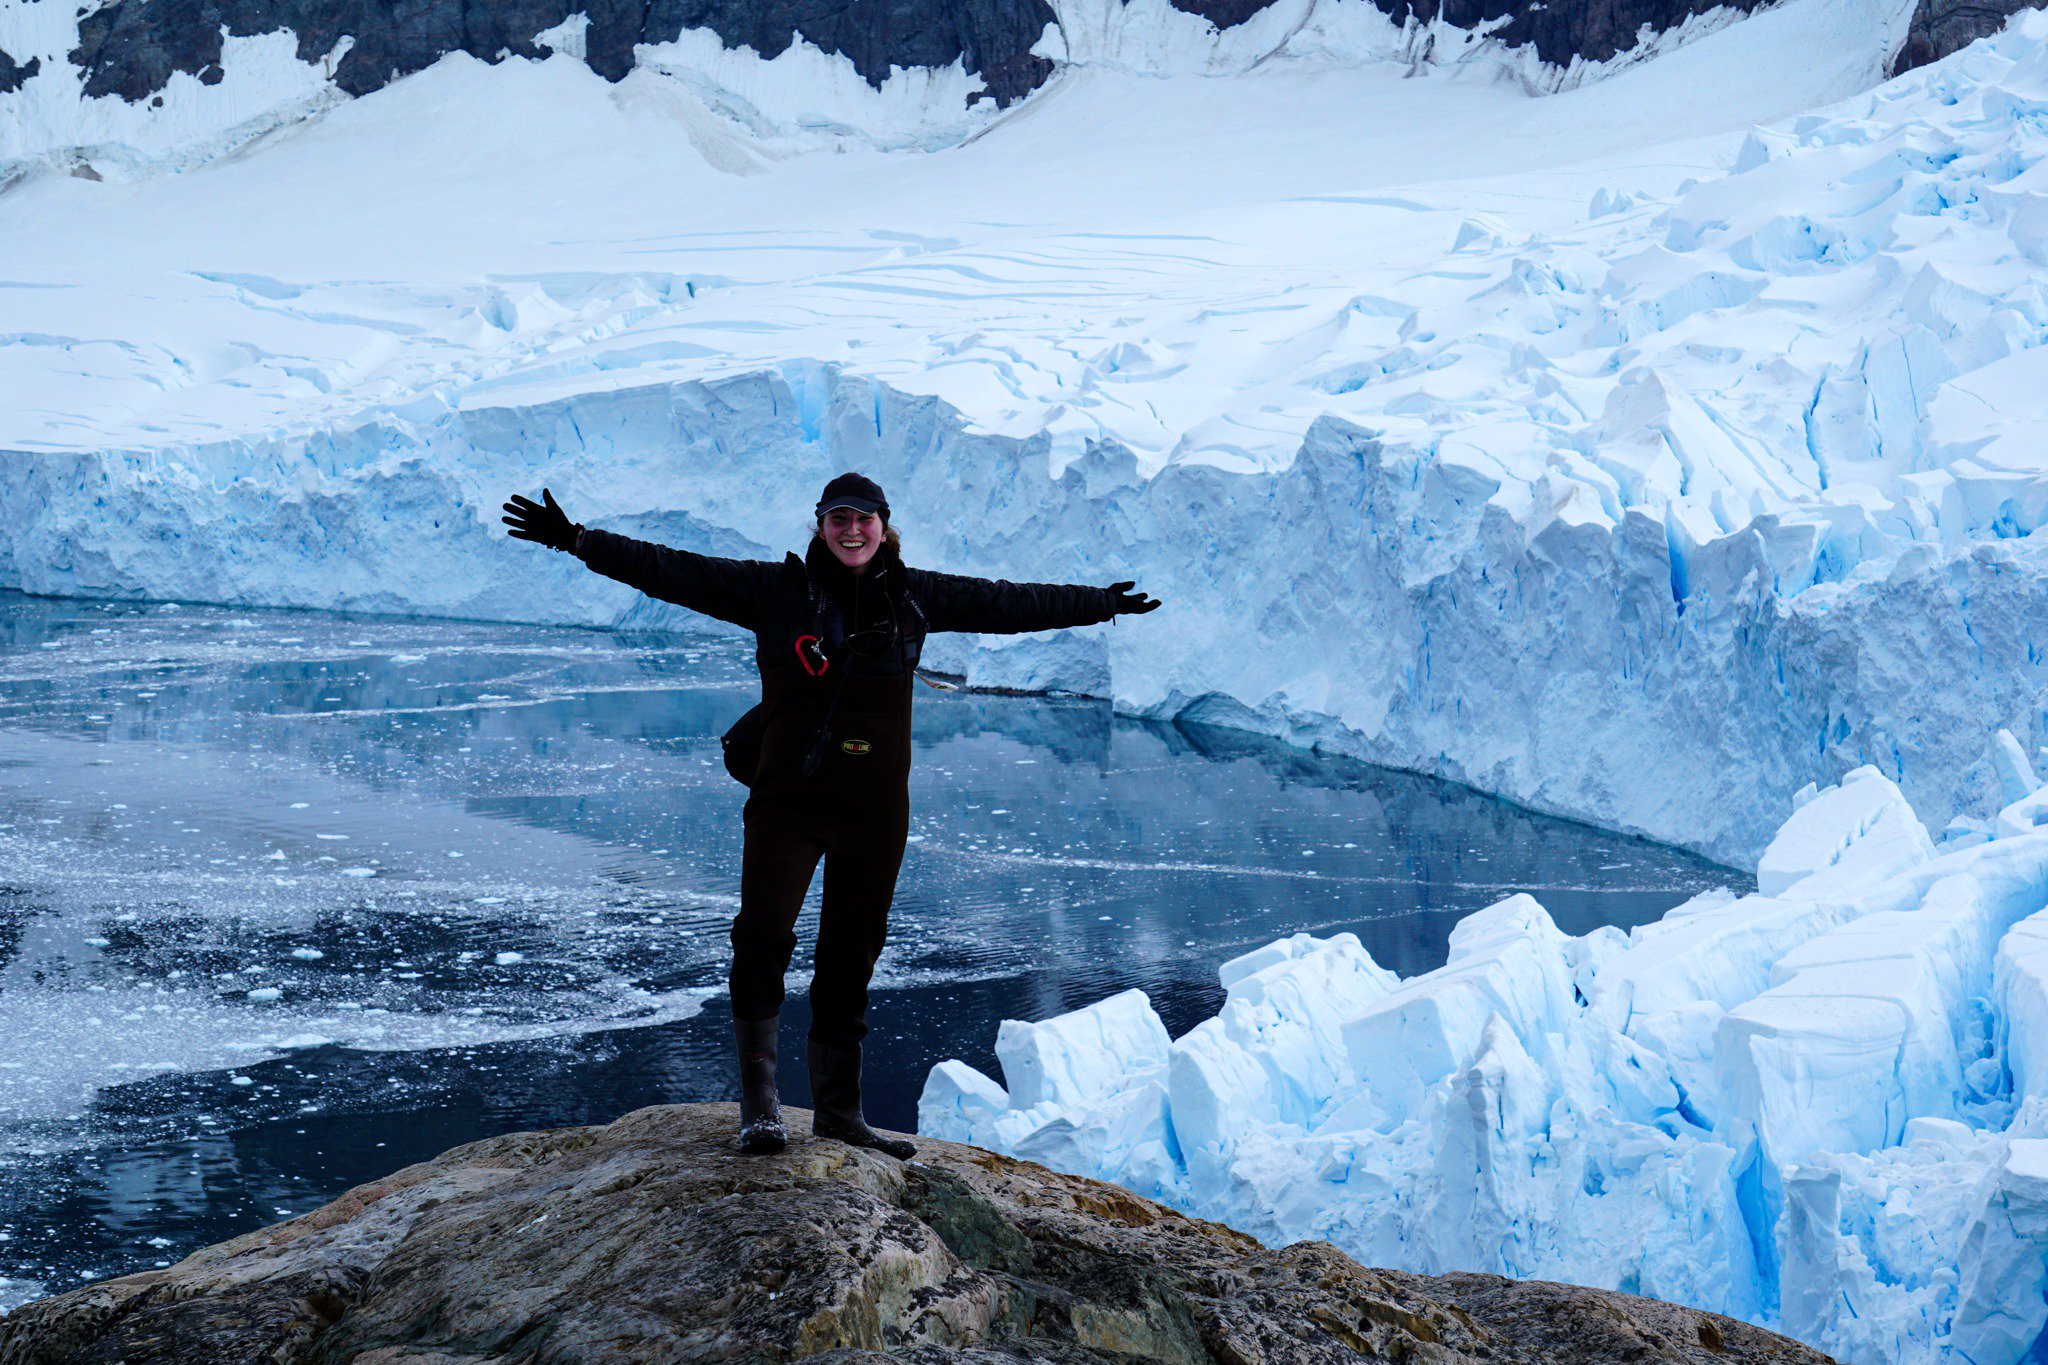 Alexandra in front of Neko Harbour, Antarctica adventure travel photographer and antarctic ambassador